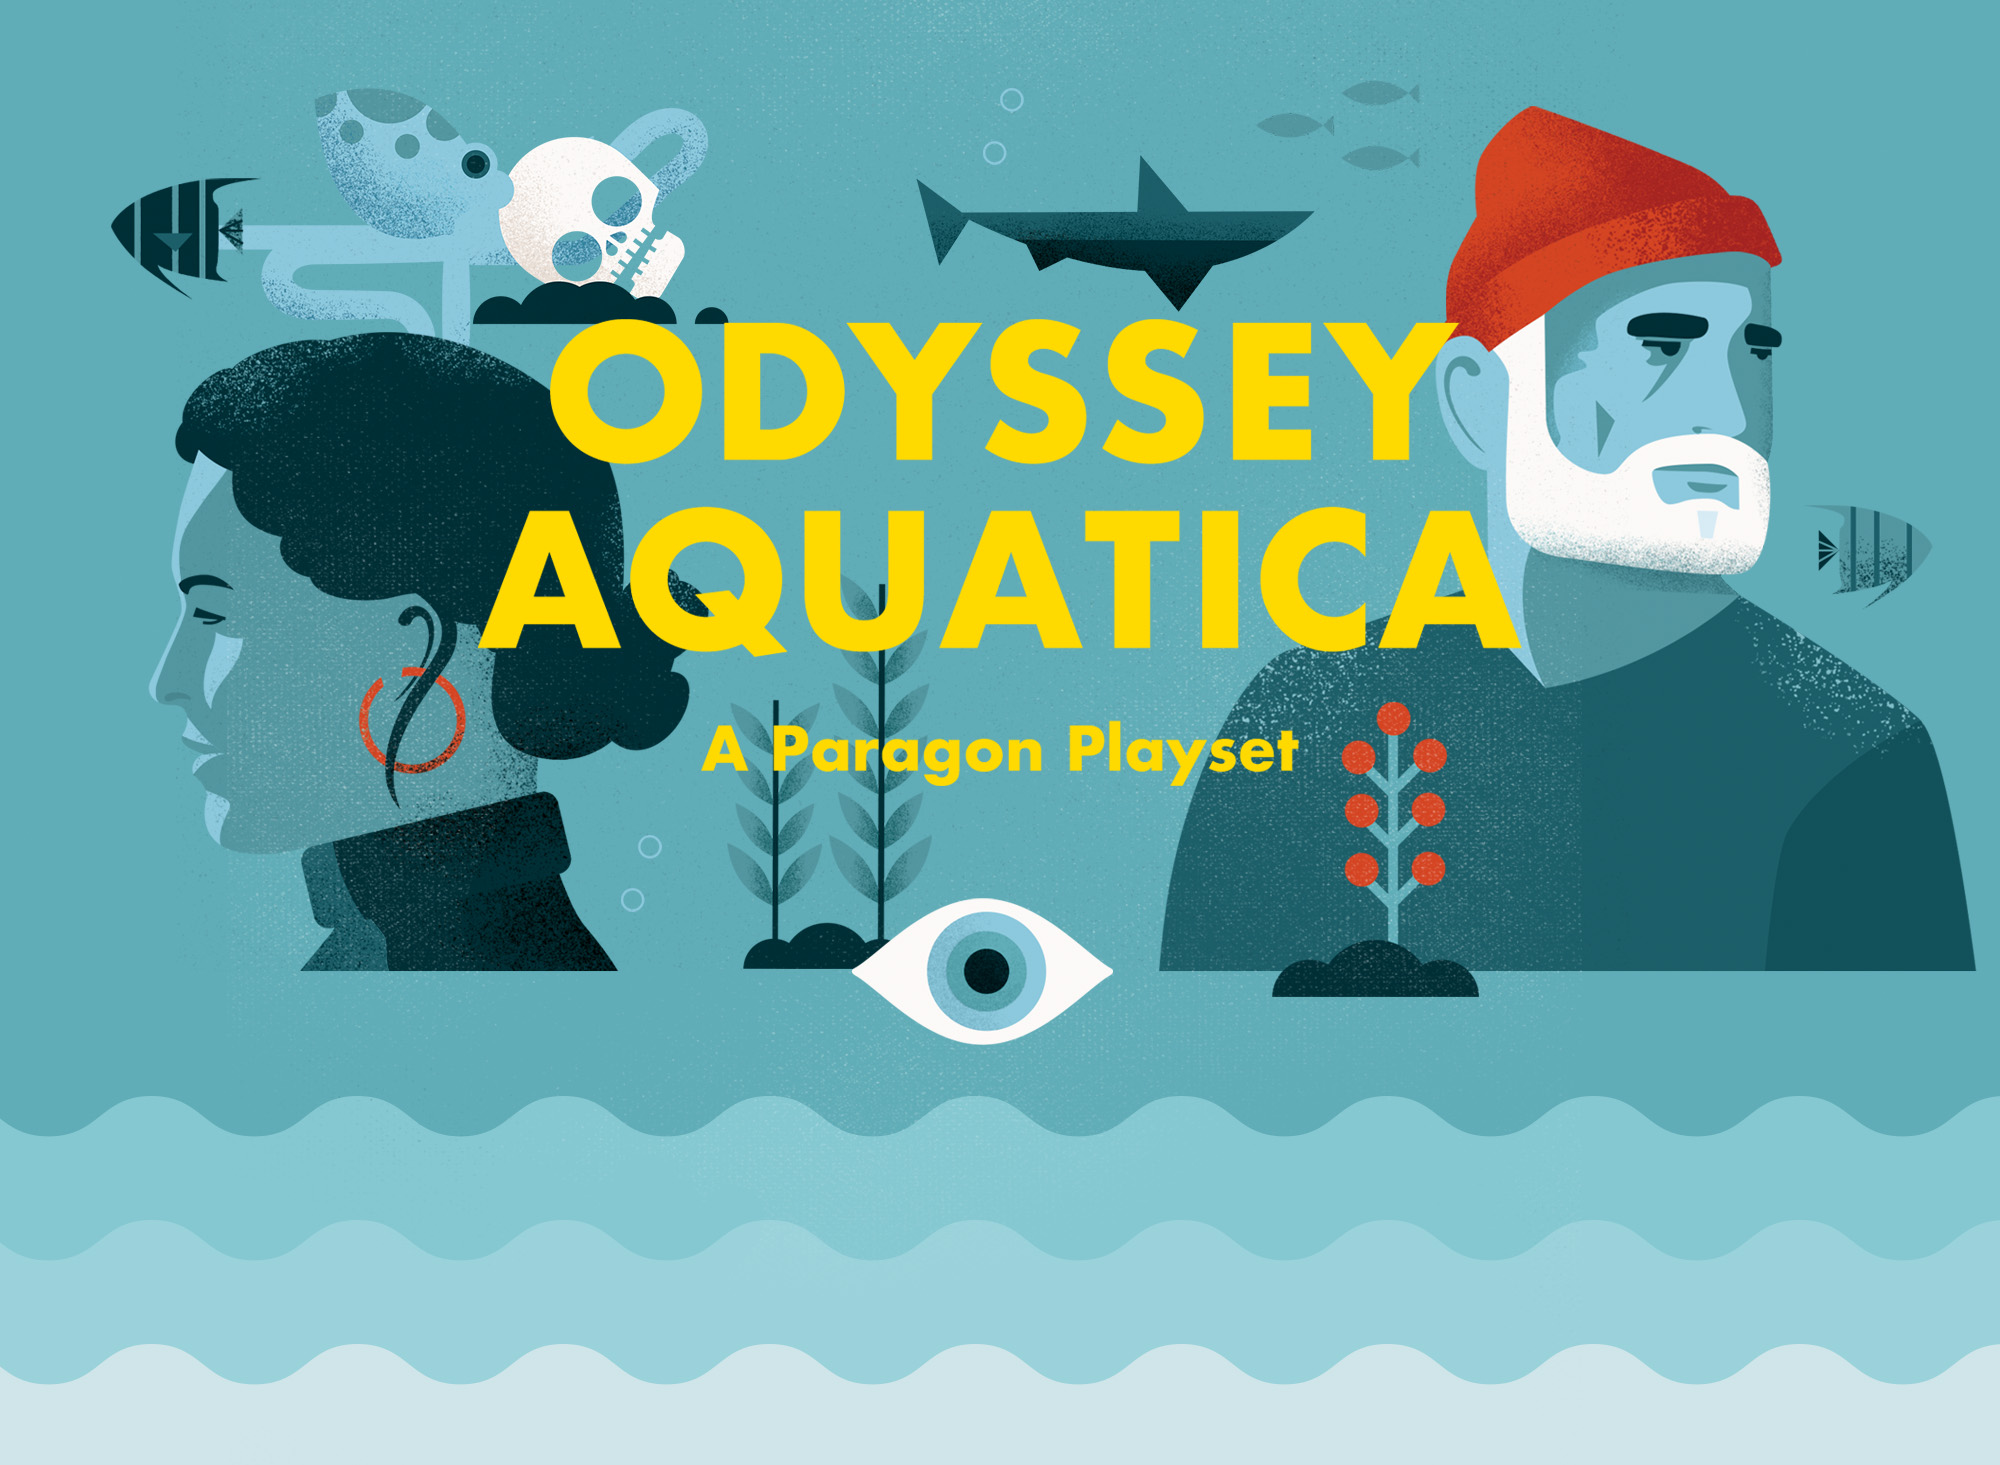 Odyssey Aquatica